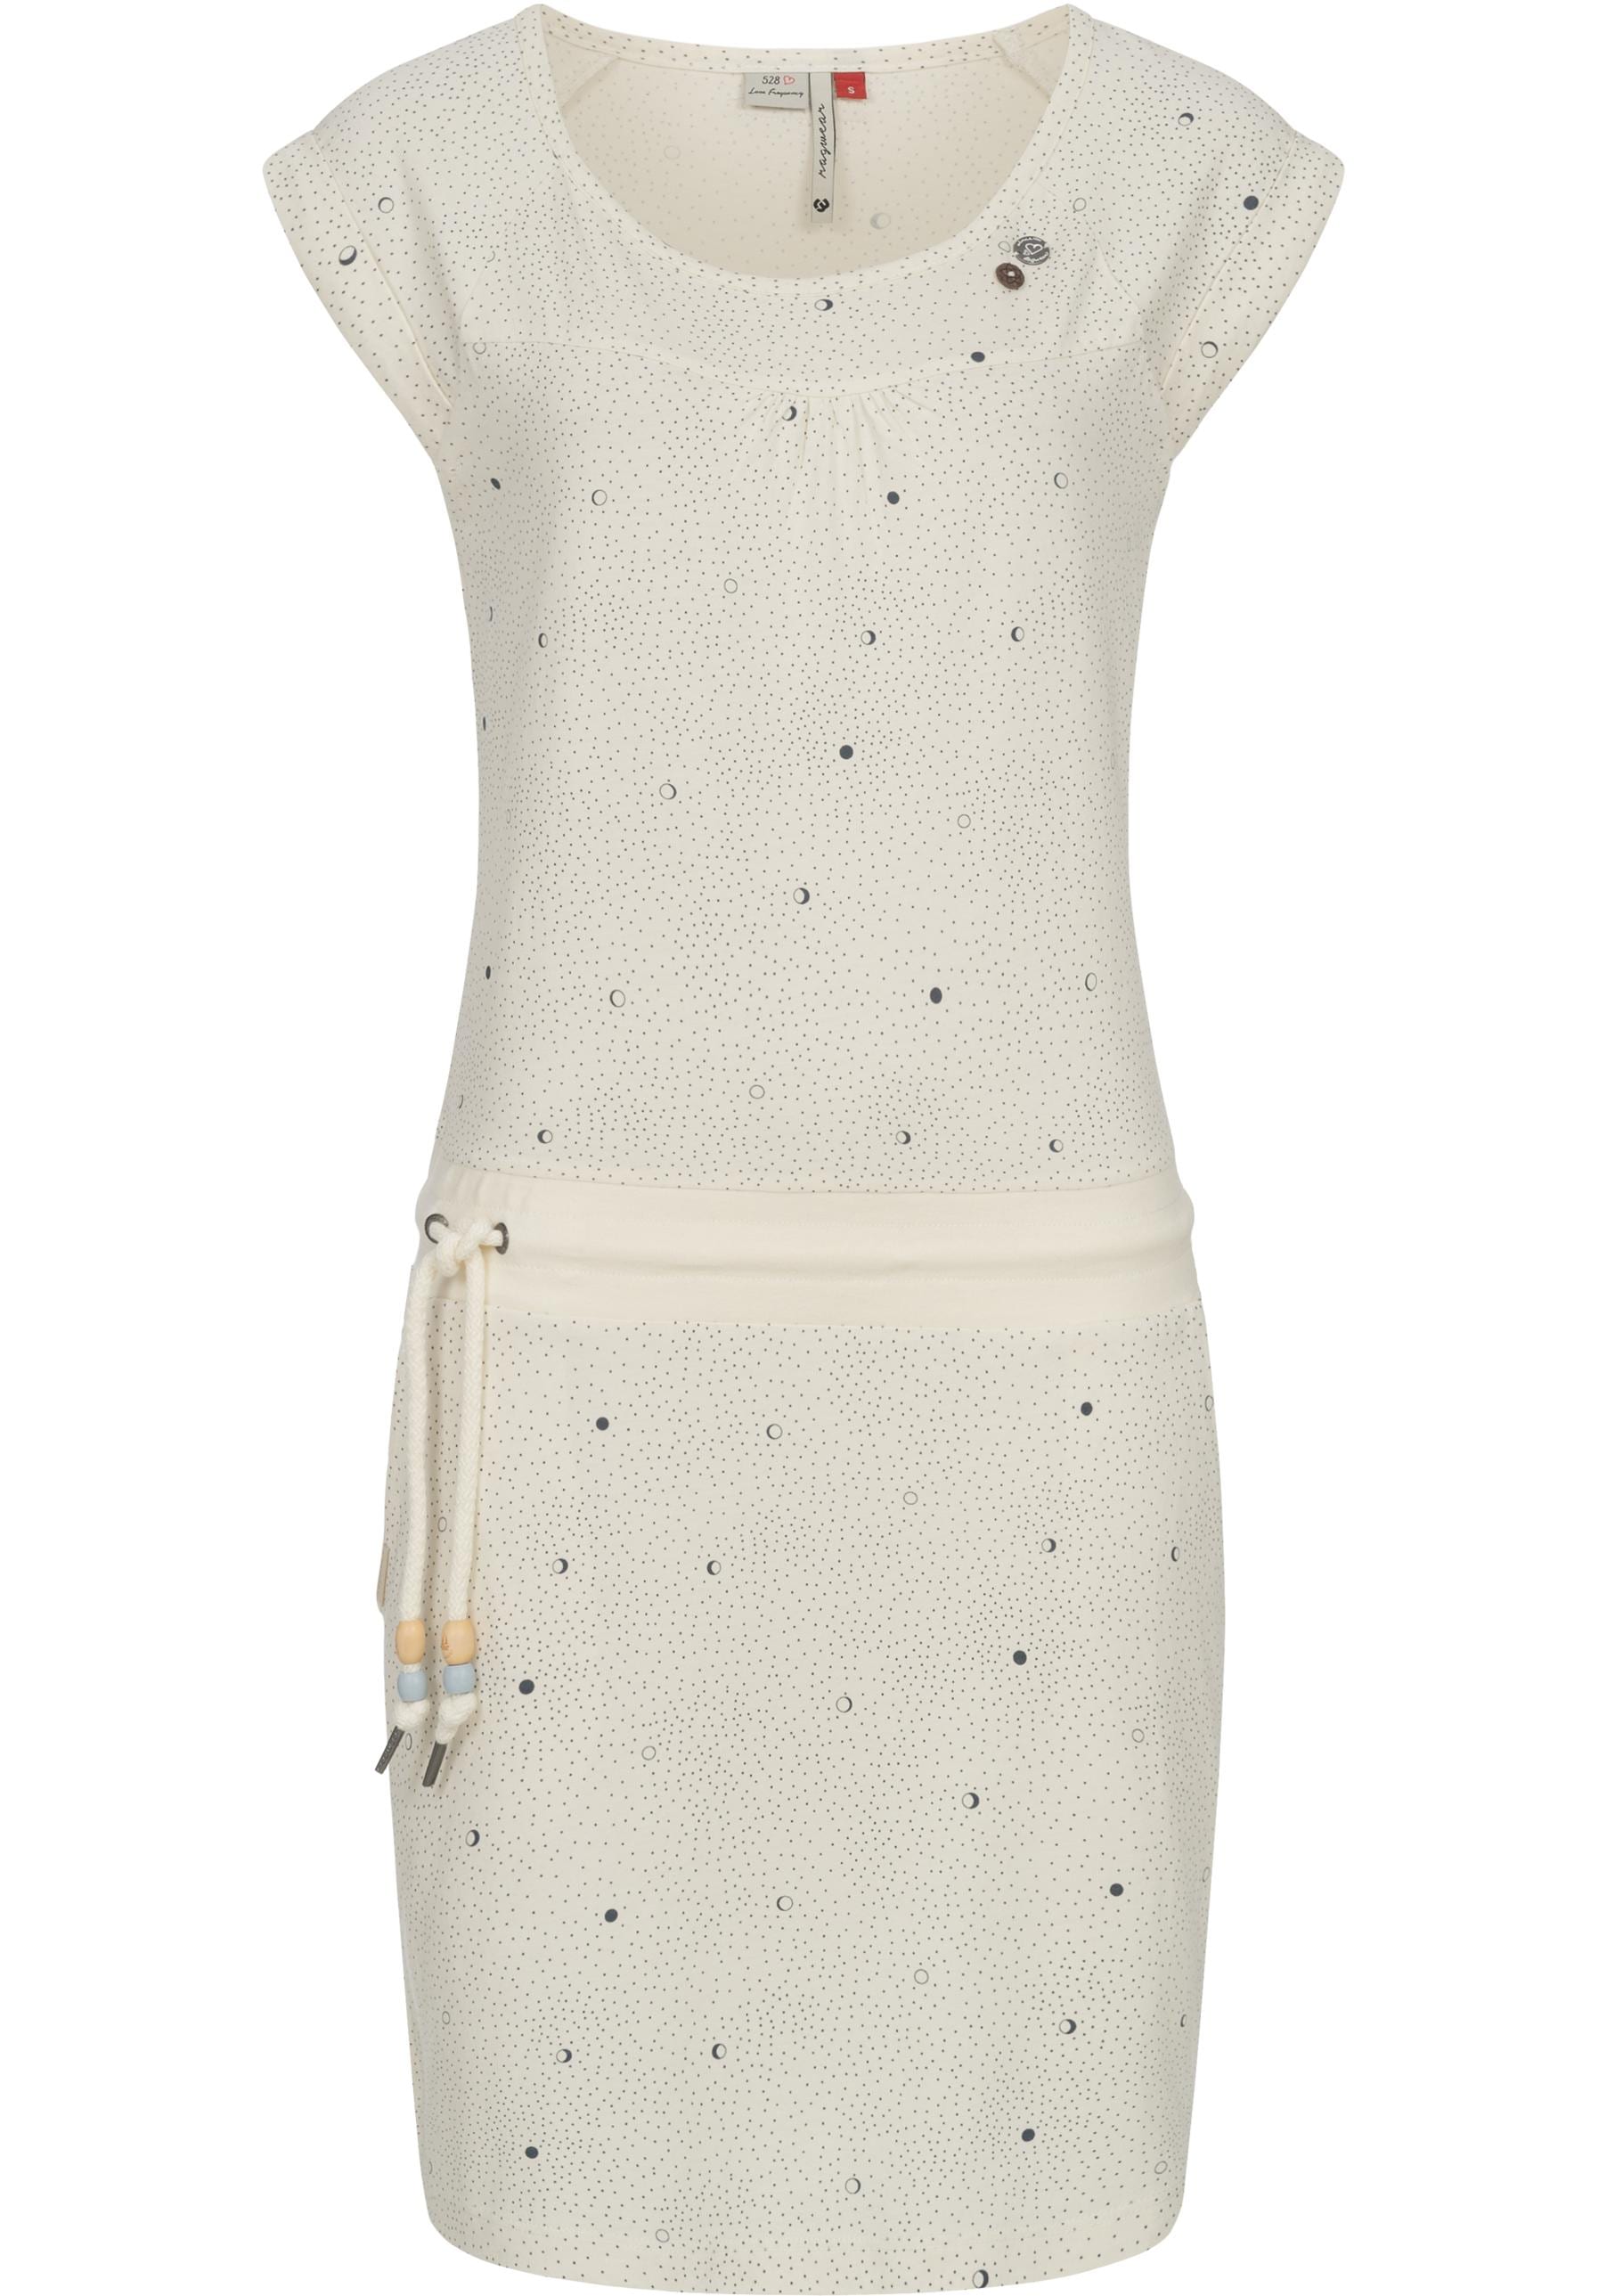 Sommerkleid »Penelope Print B Intl.«, leichtes Strand-Kleid mit stylischem Print